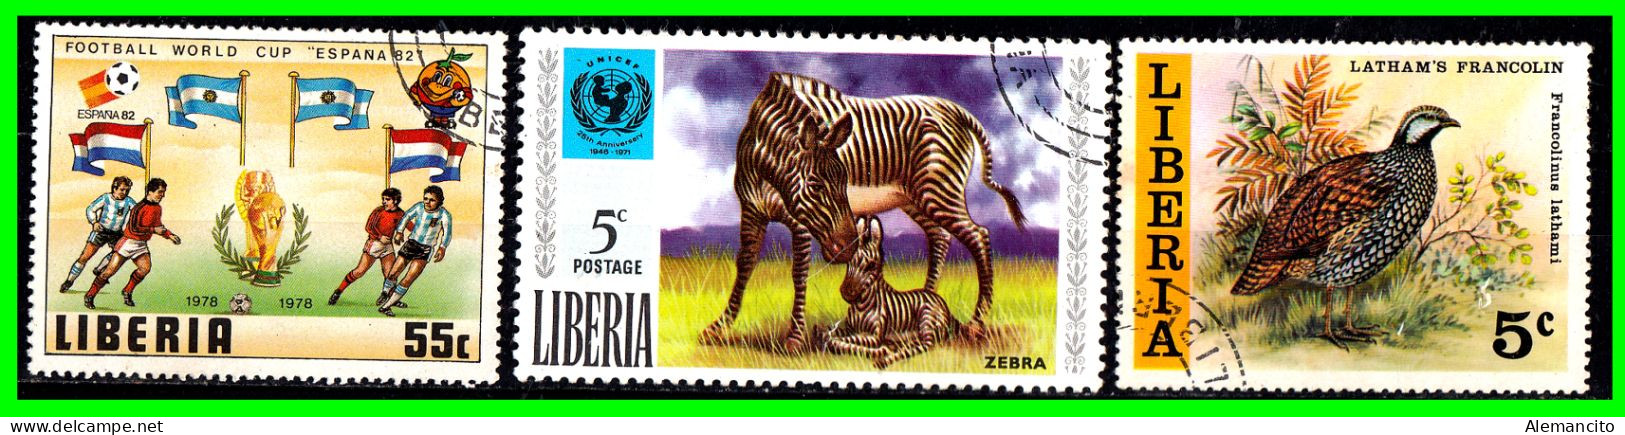 LIBERIA ( AFRIKA )  SELLOS AÑO 1970 TEMATICA FAUNA - Liberia